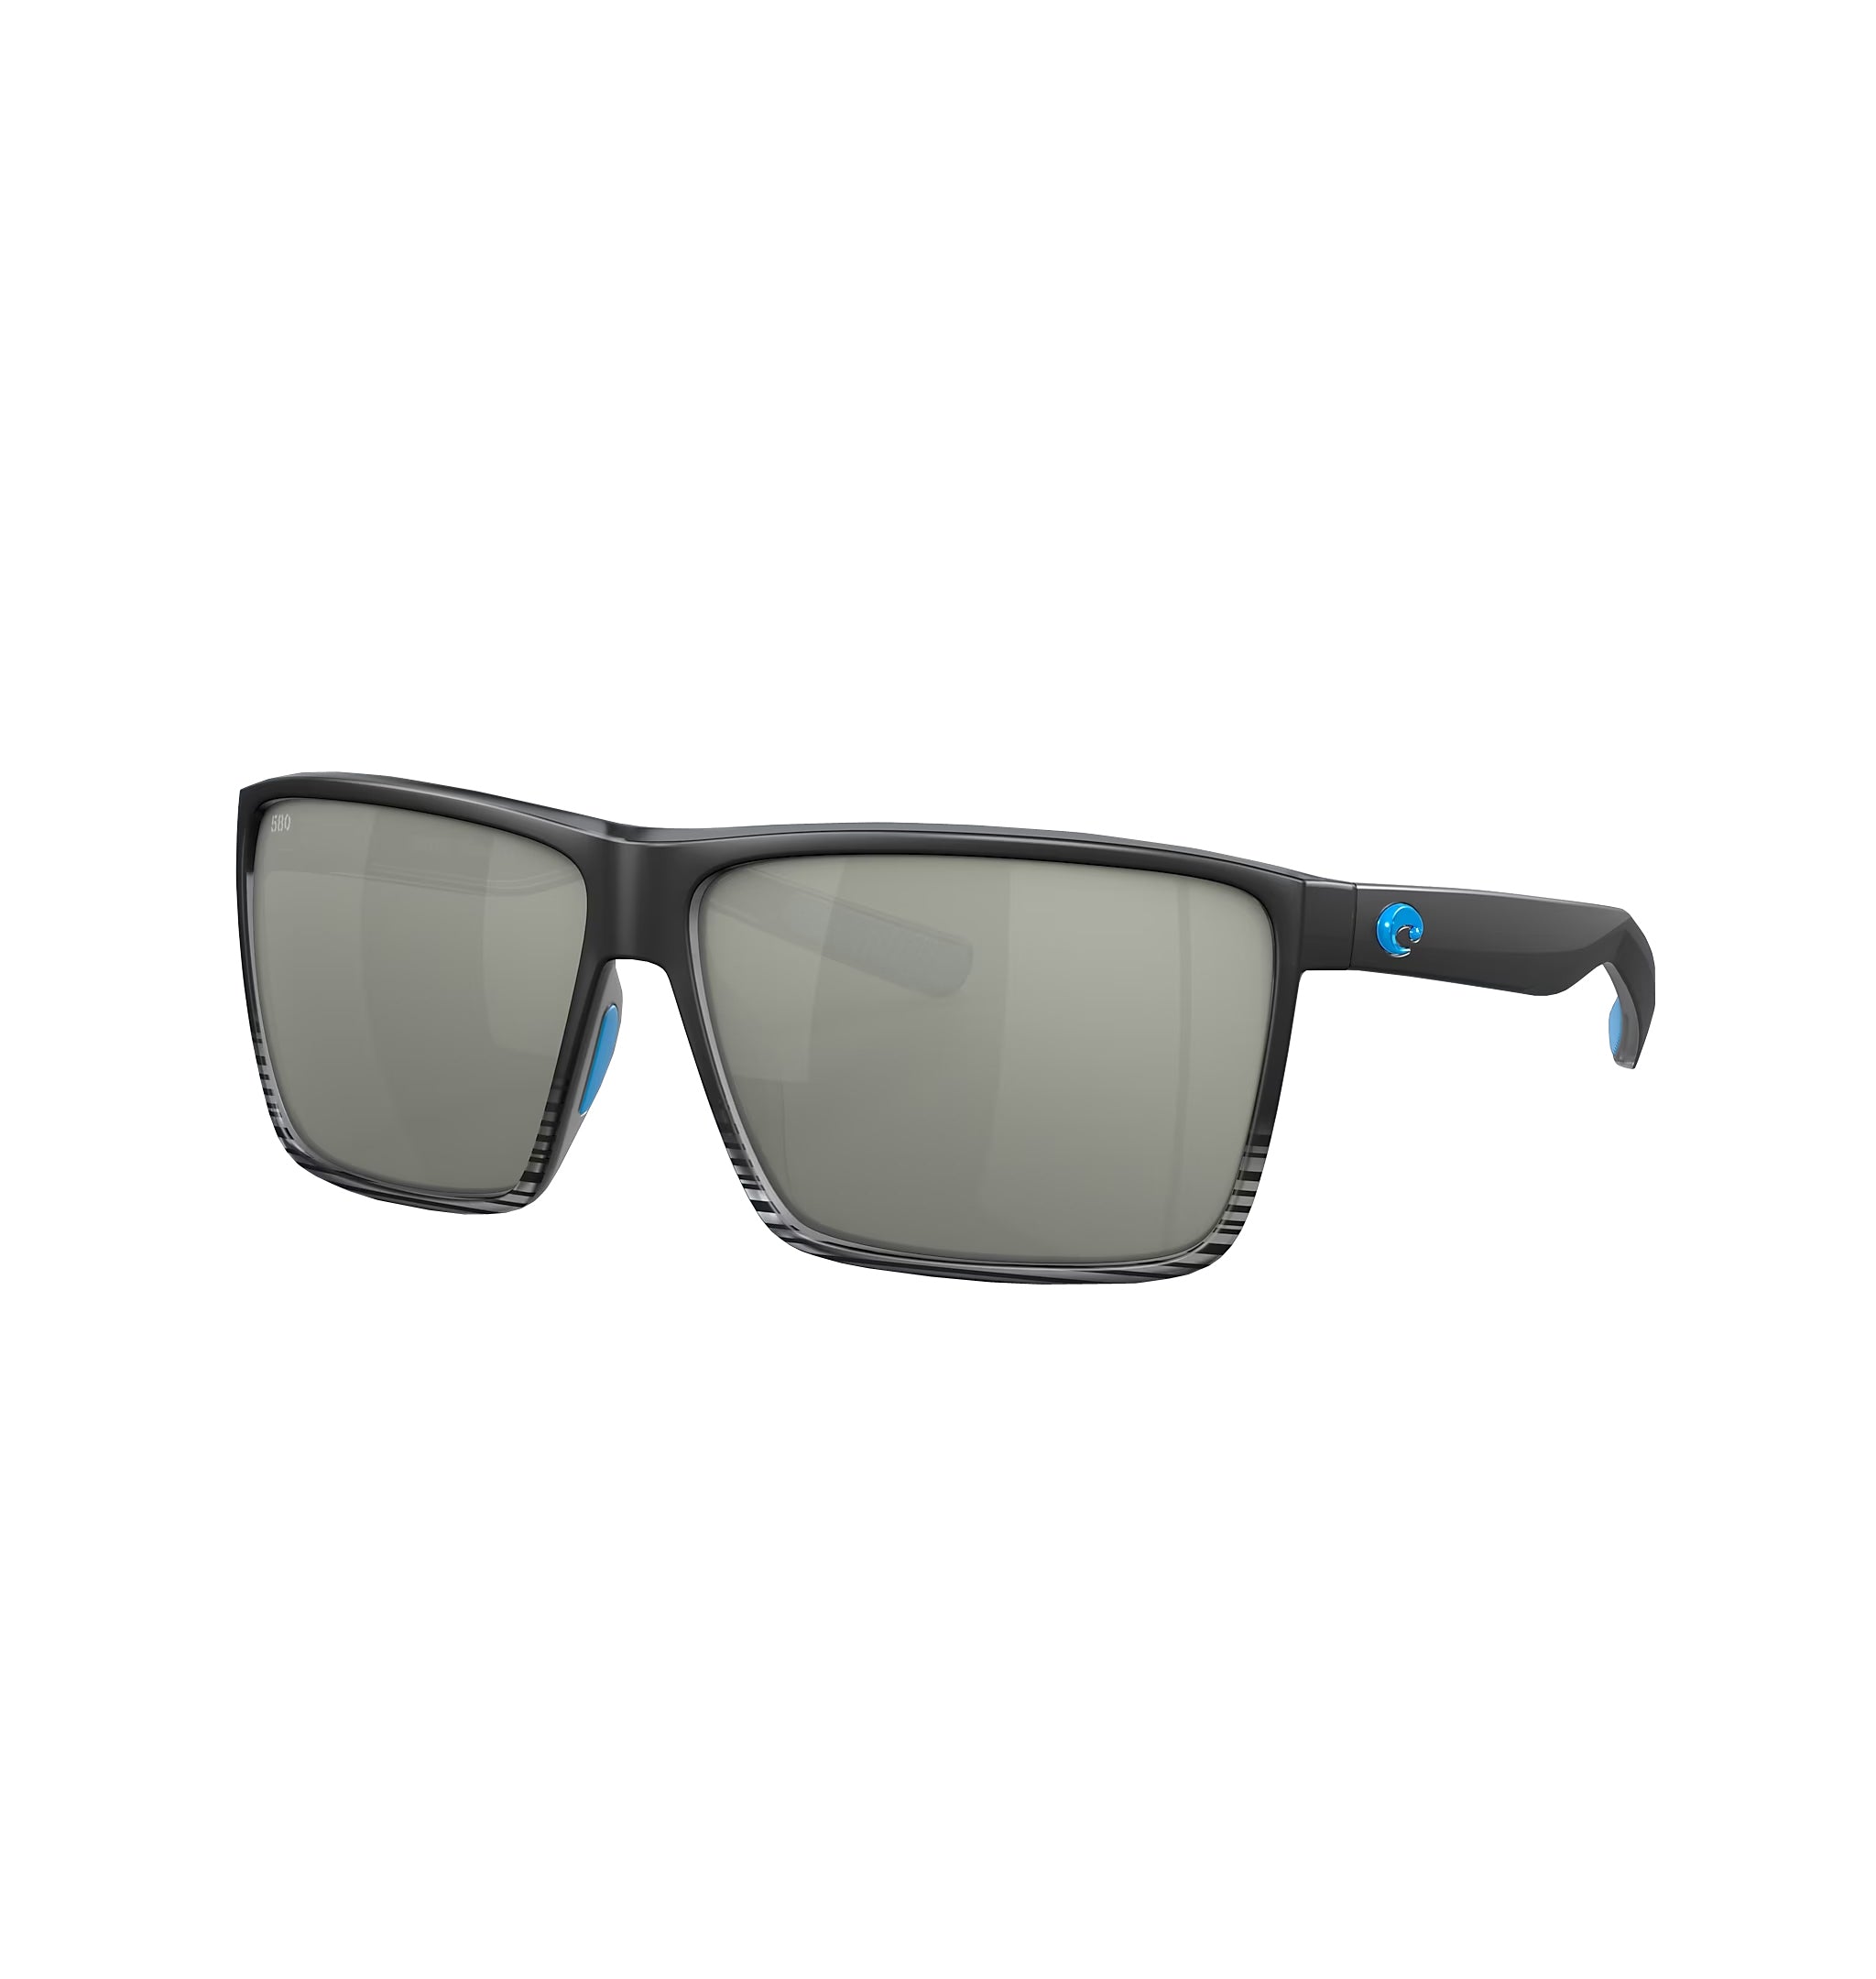 Costa Del Mar Rincon Sunglasses MatteBlack Fade 580G